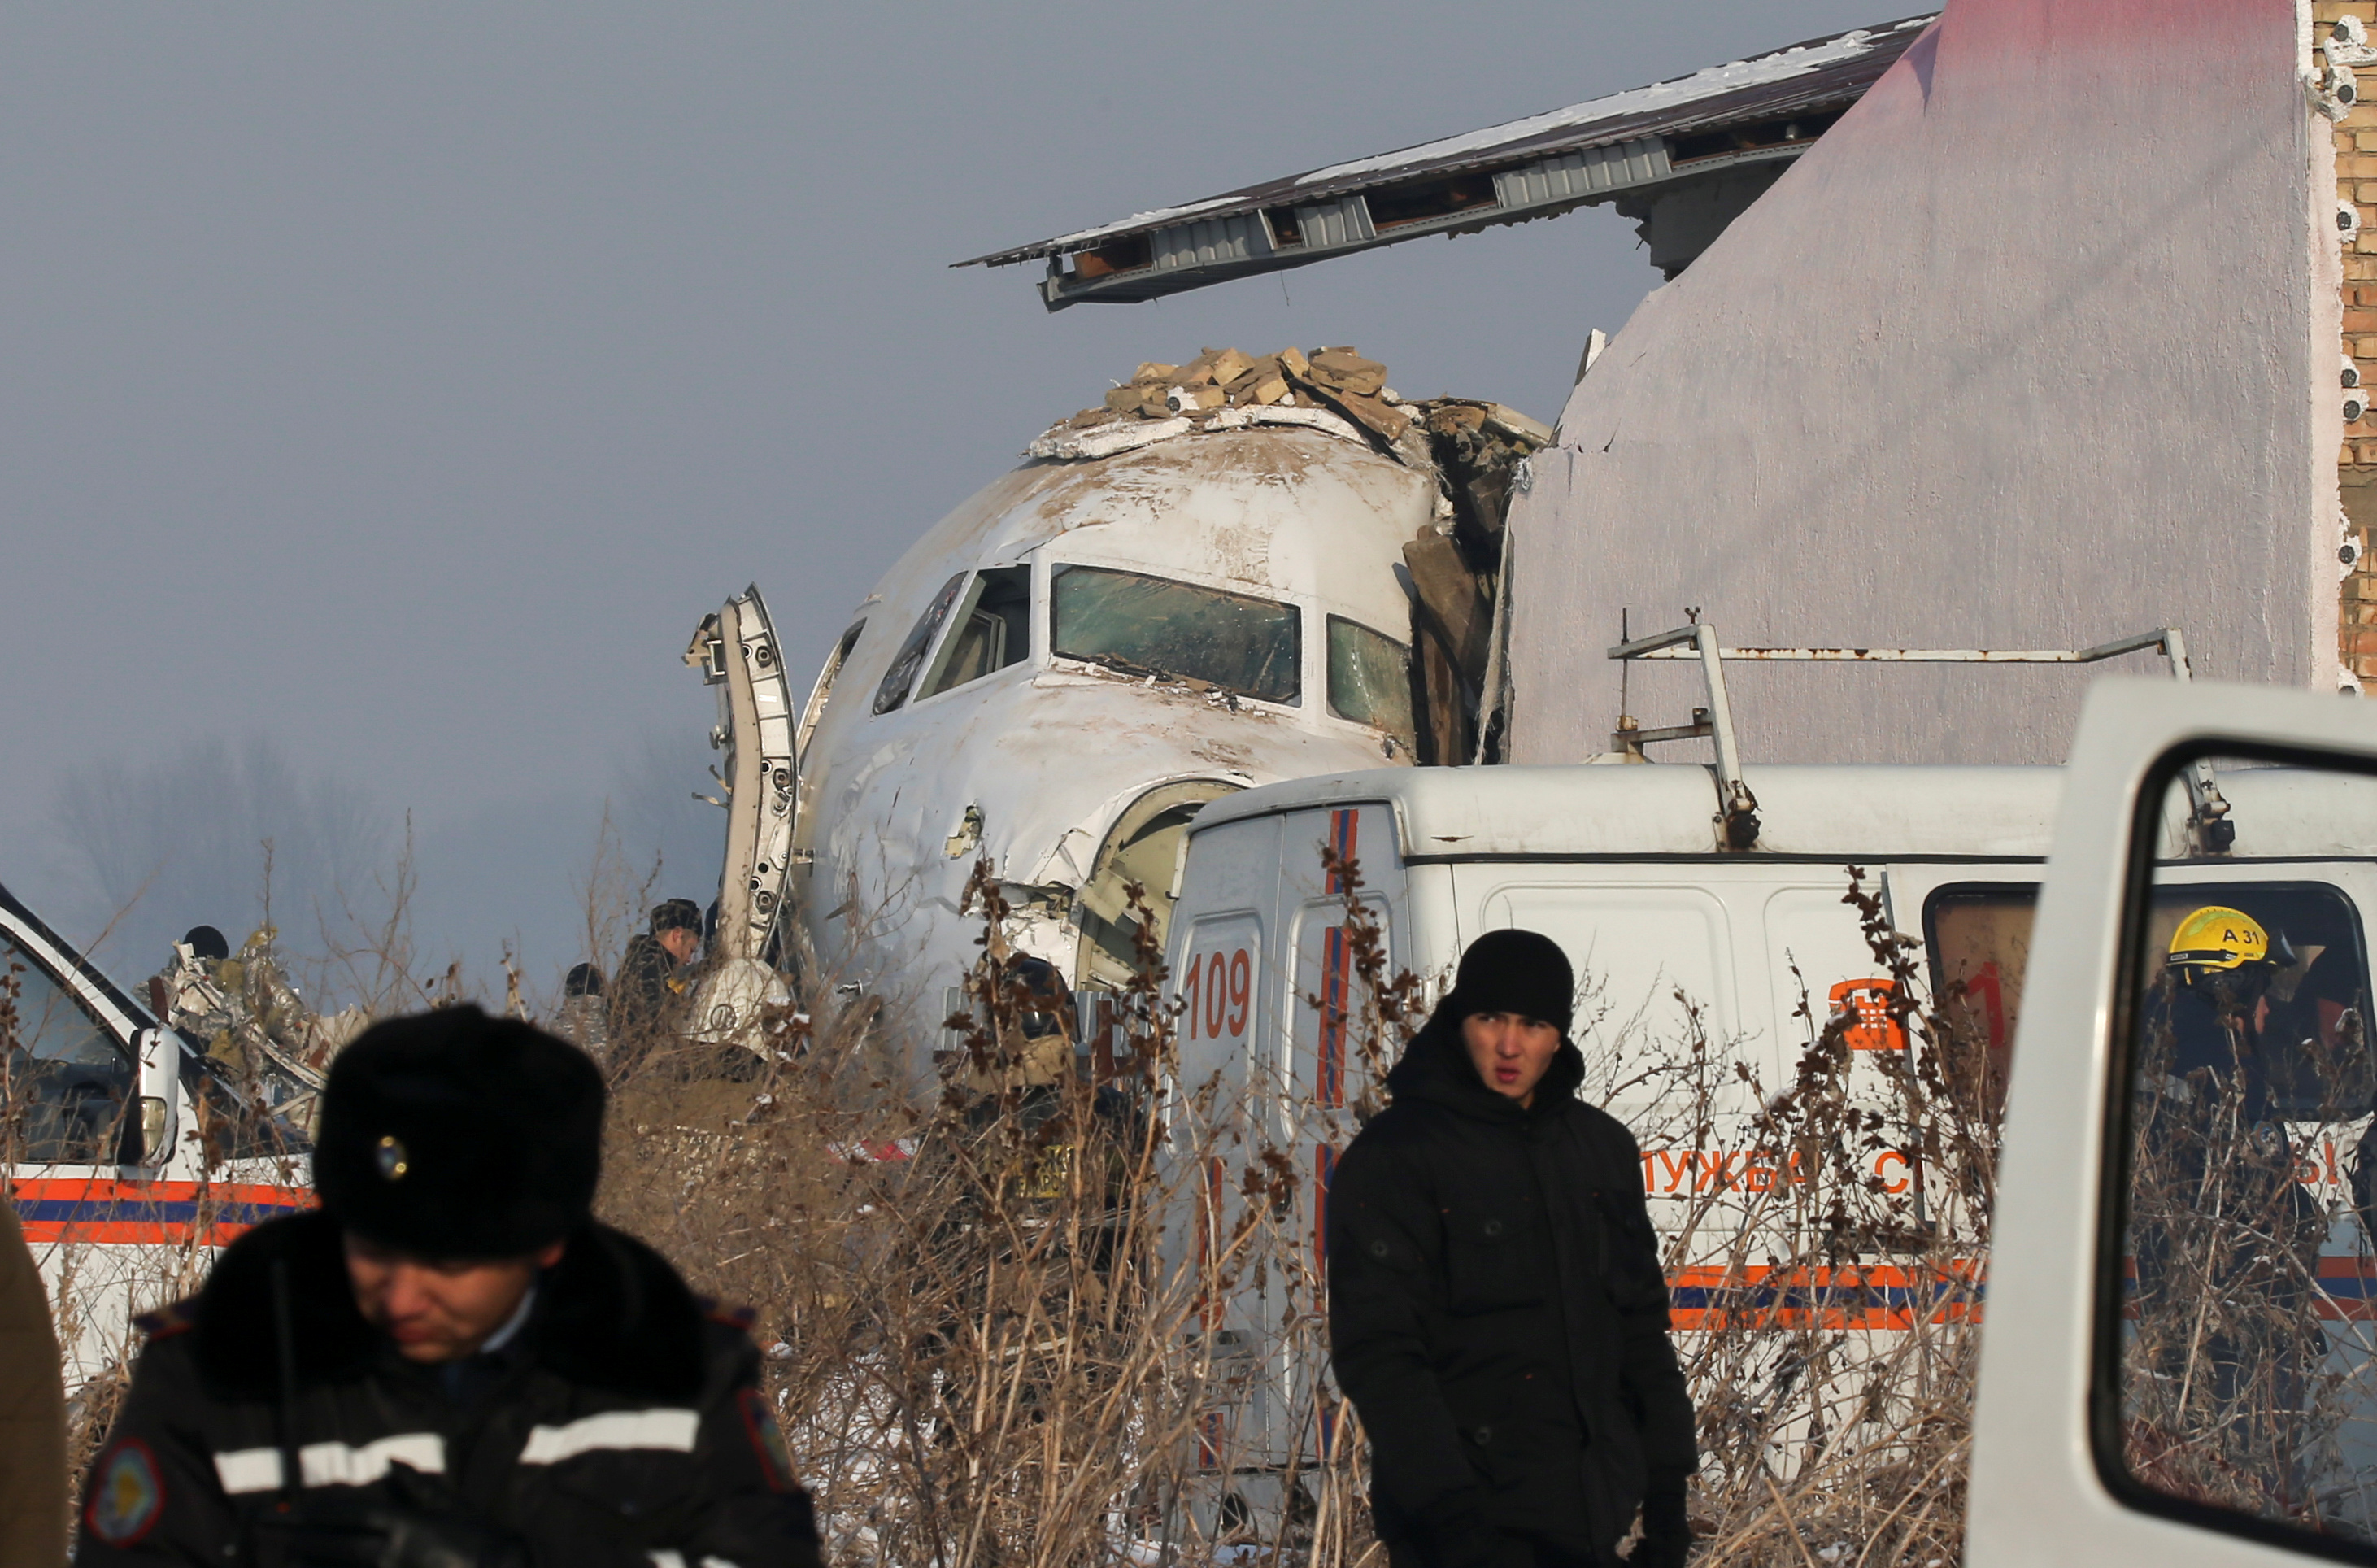 Авиакатастрофа сейчас. Катастрофа ту-154 в Алма-Ате. Авиакатастрофа в Алма Ате 2019. Катастрофа Fokker 100 под Алма-атой. Fokker 100 bek Air катастрофа.